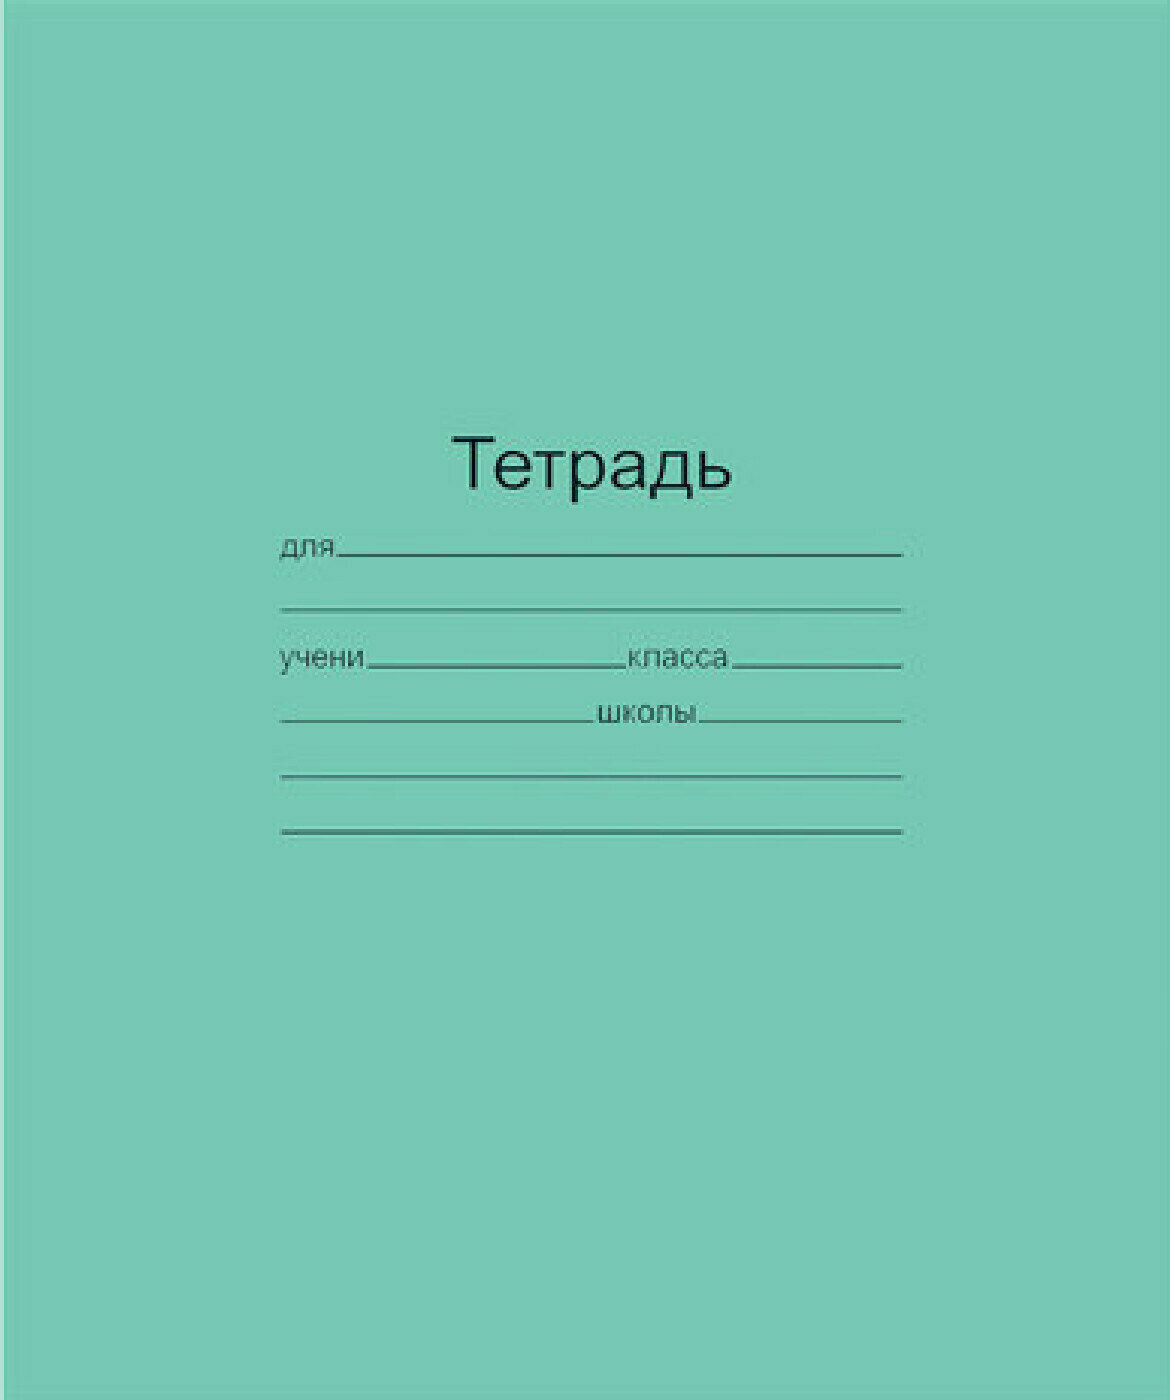 Тетрадь Тетрадь зелёная обложка 12 листов, 10 шт, "Маяк", офсет, косая линия с полями, Т5012Т2 4Г